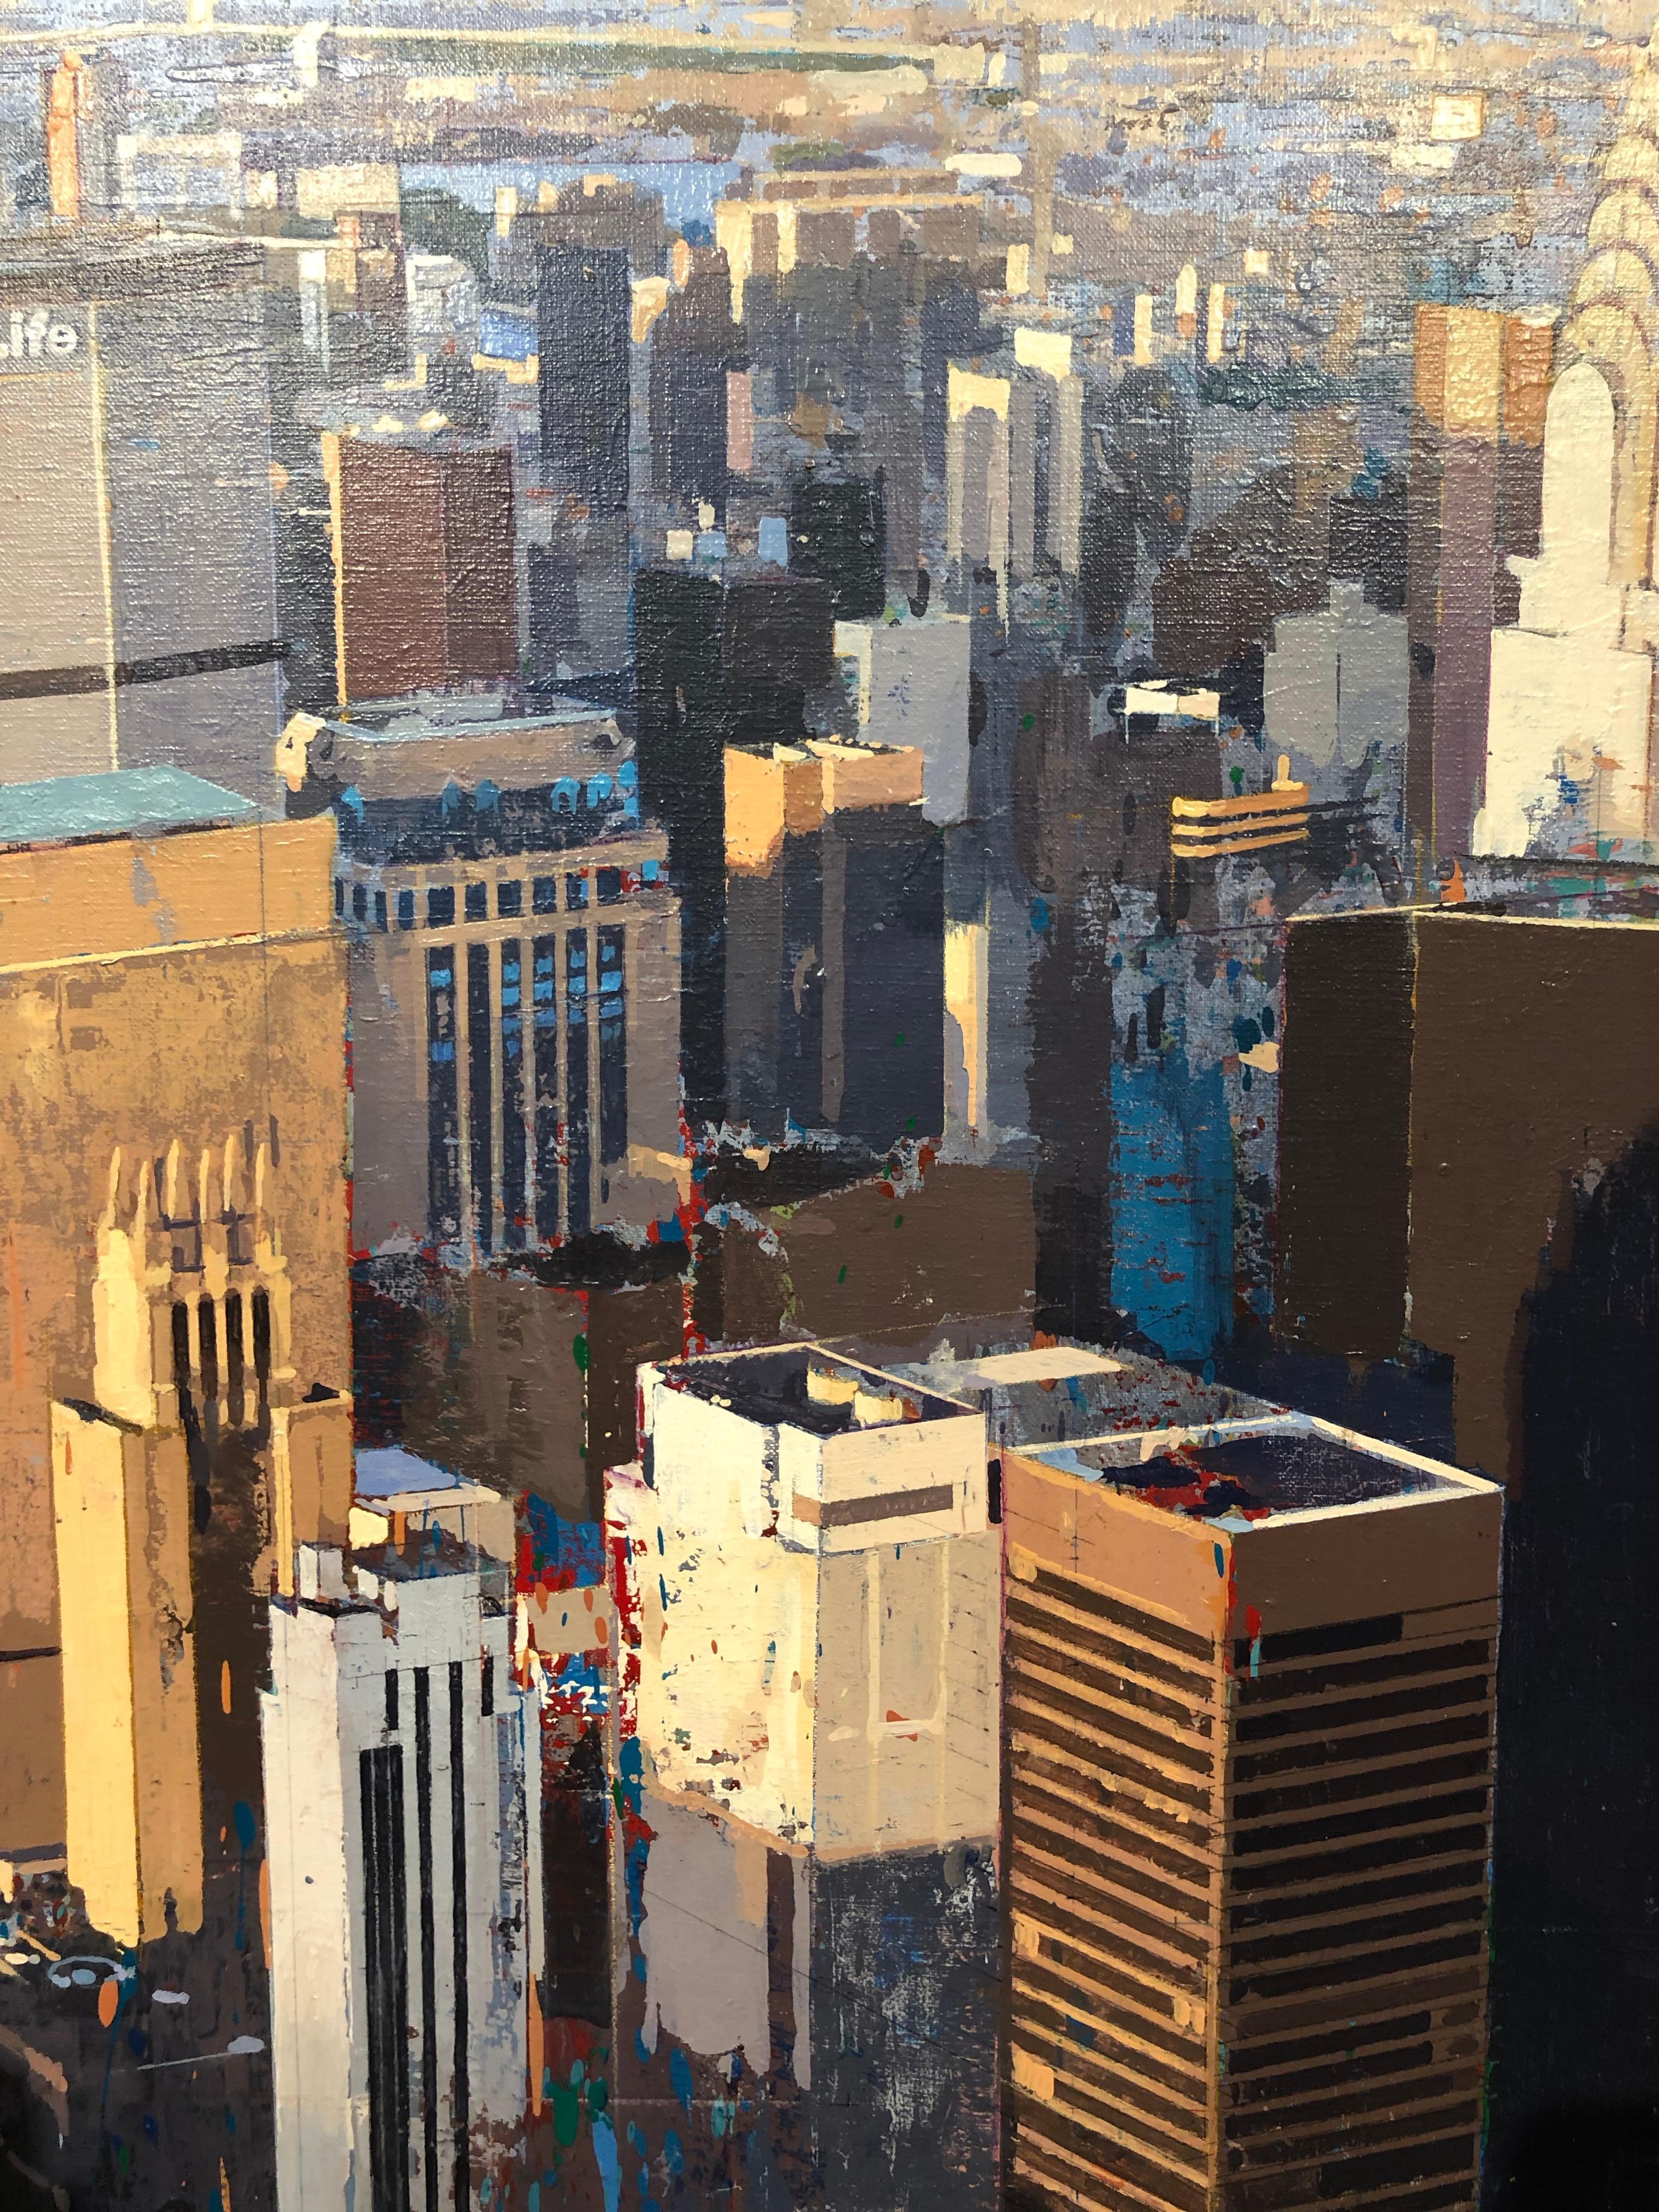 Life - Vue aérienne originale de New York - Peinture à l'huile sur toile Albert Vidal - Gris Abstract Painting par Albert Vidal Moreno